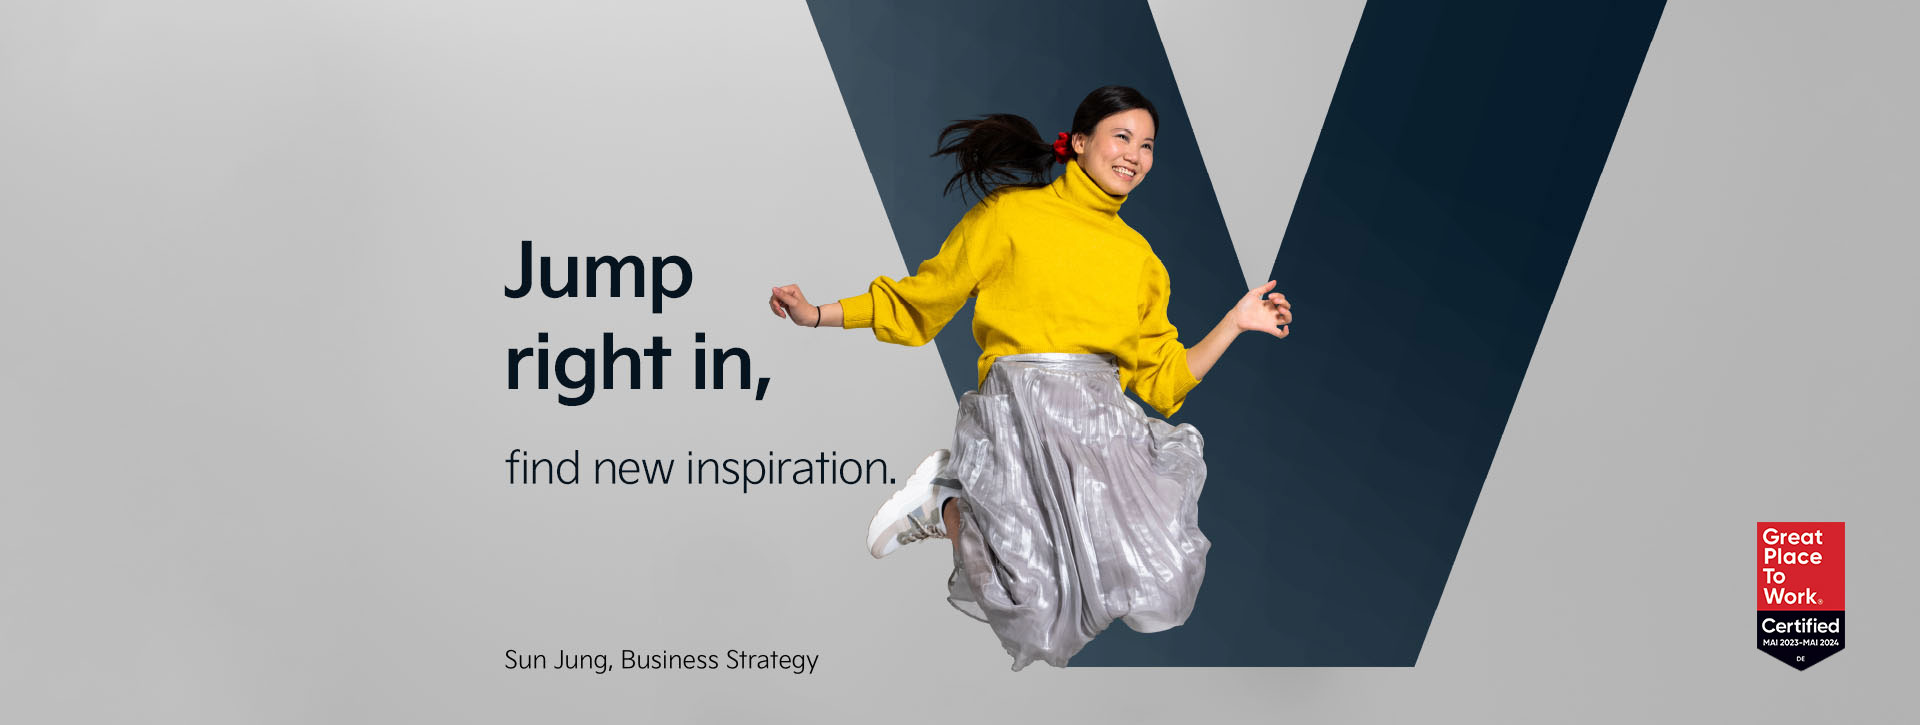 Sun del dipartimento Business Strategy sta saltando davanti alla lettera "V". Accanto troviamo lo slogan: "Jump right in - find new inspiration"..